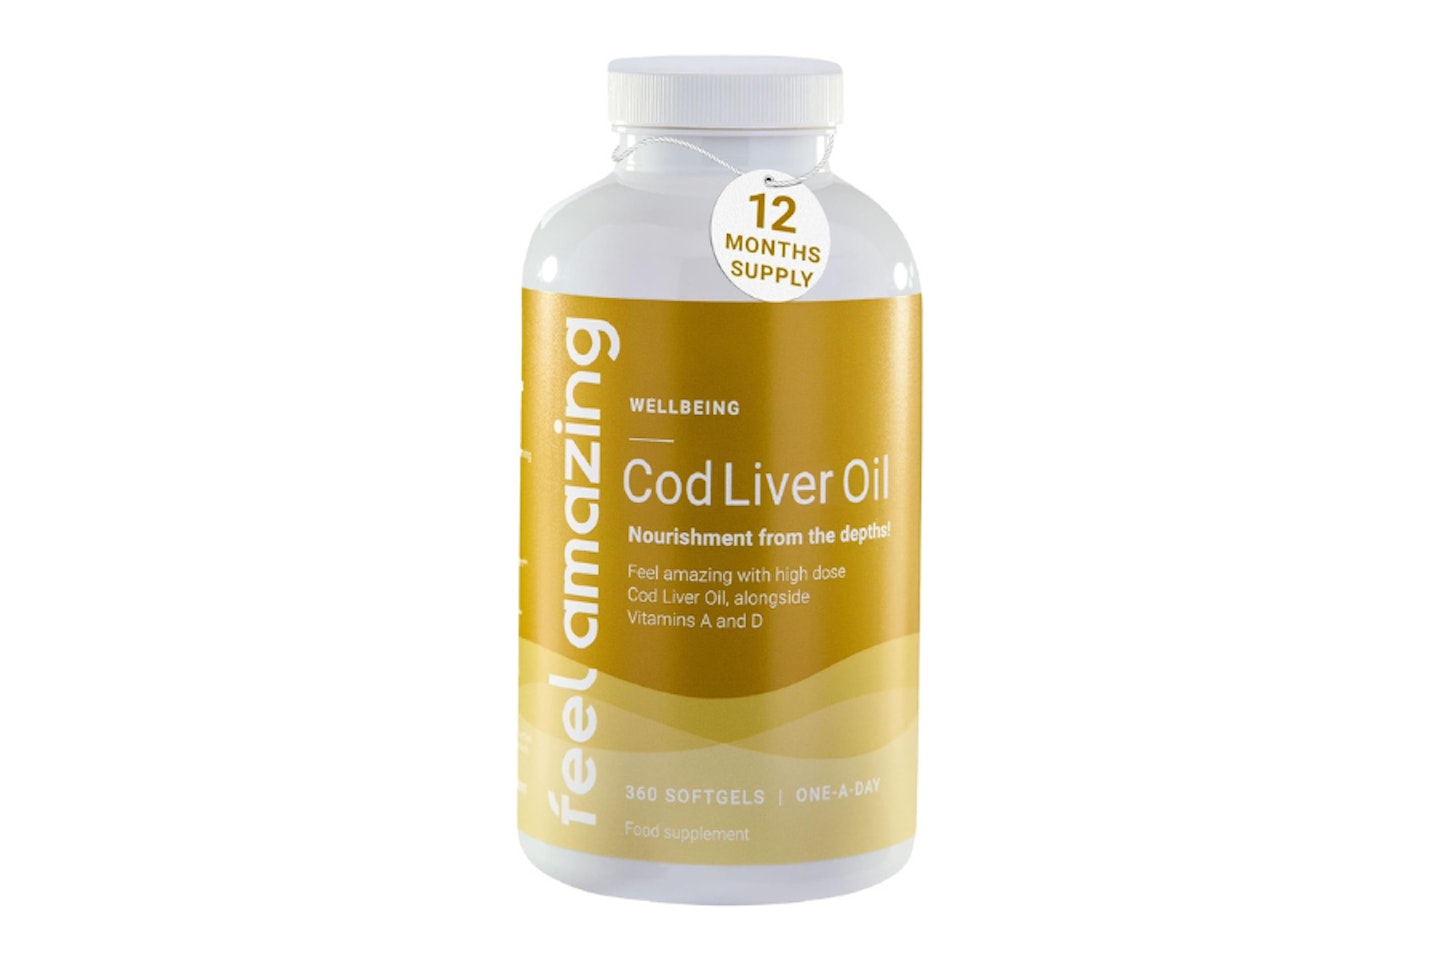 
Cod Liver Oil 1000mg - 360 Softgels